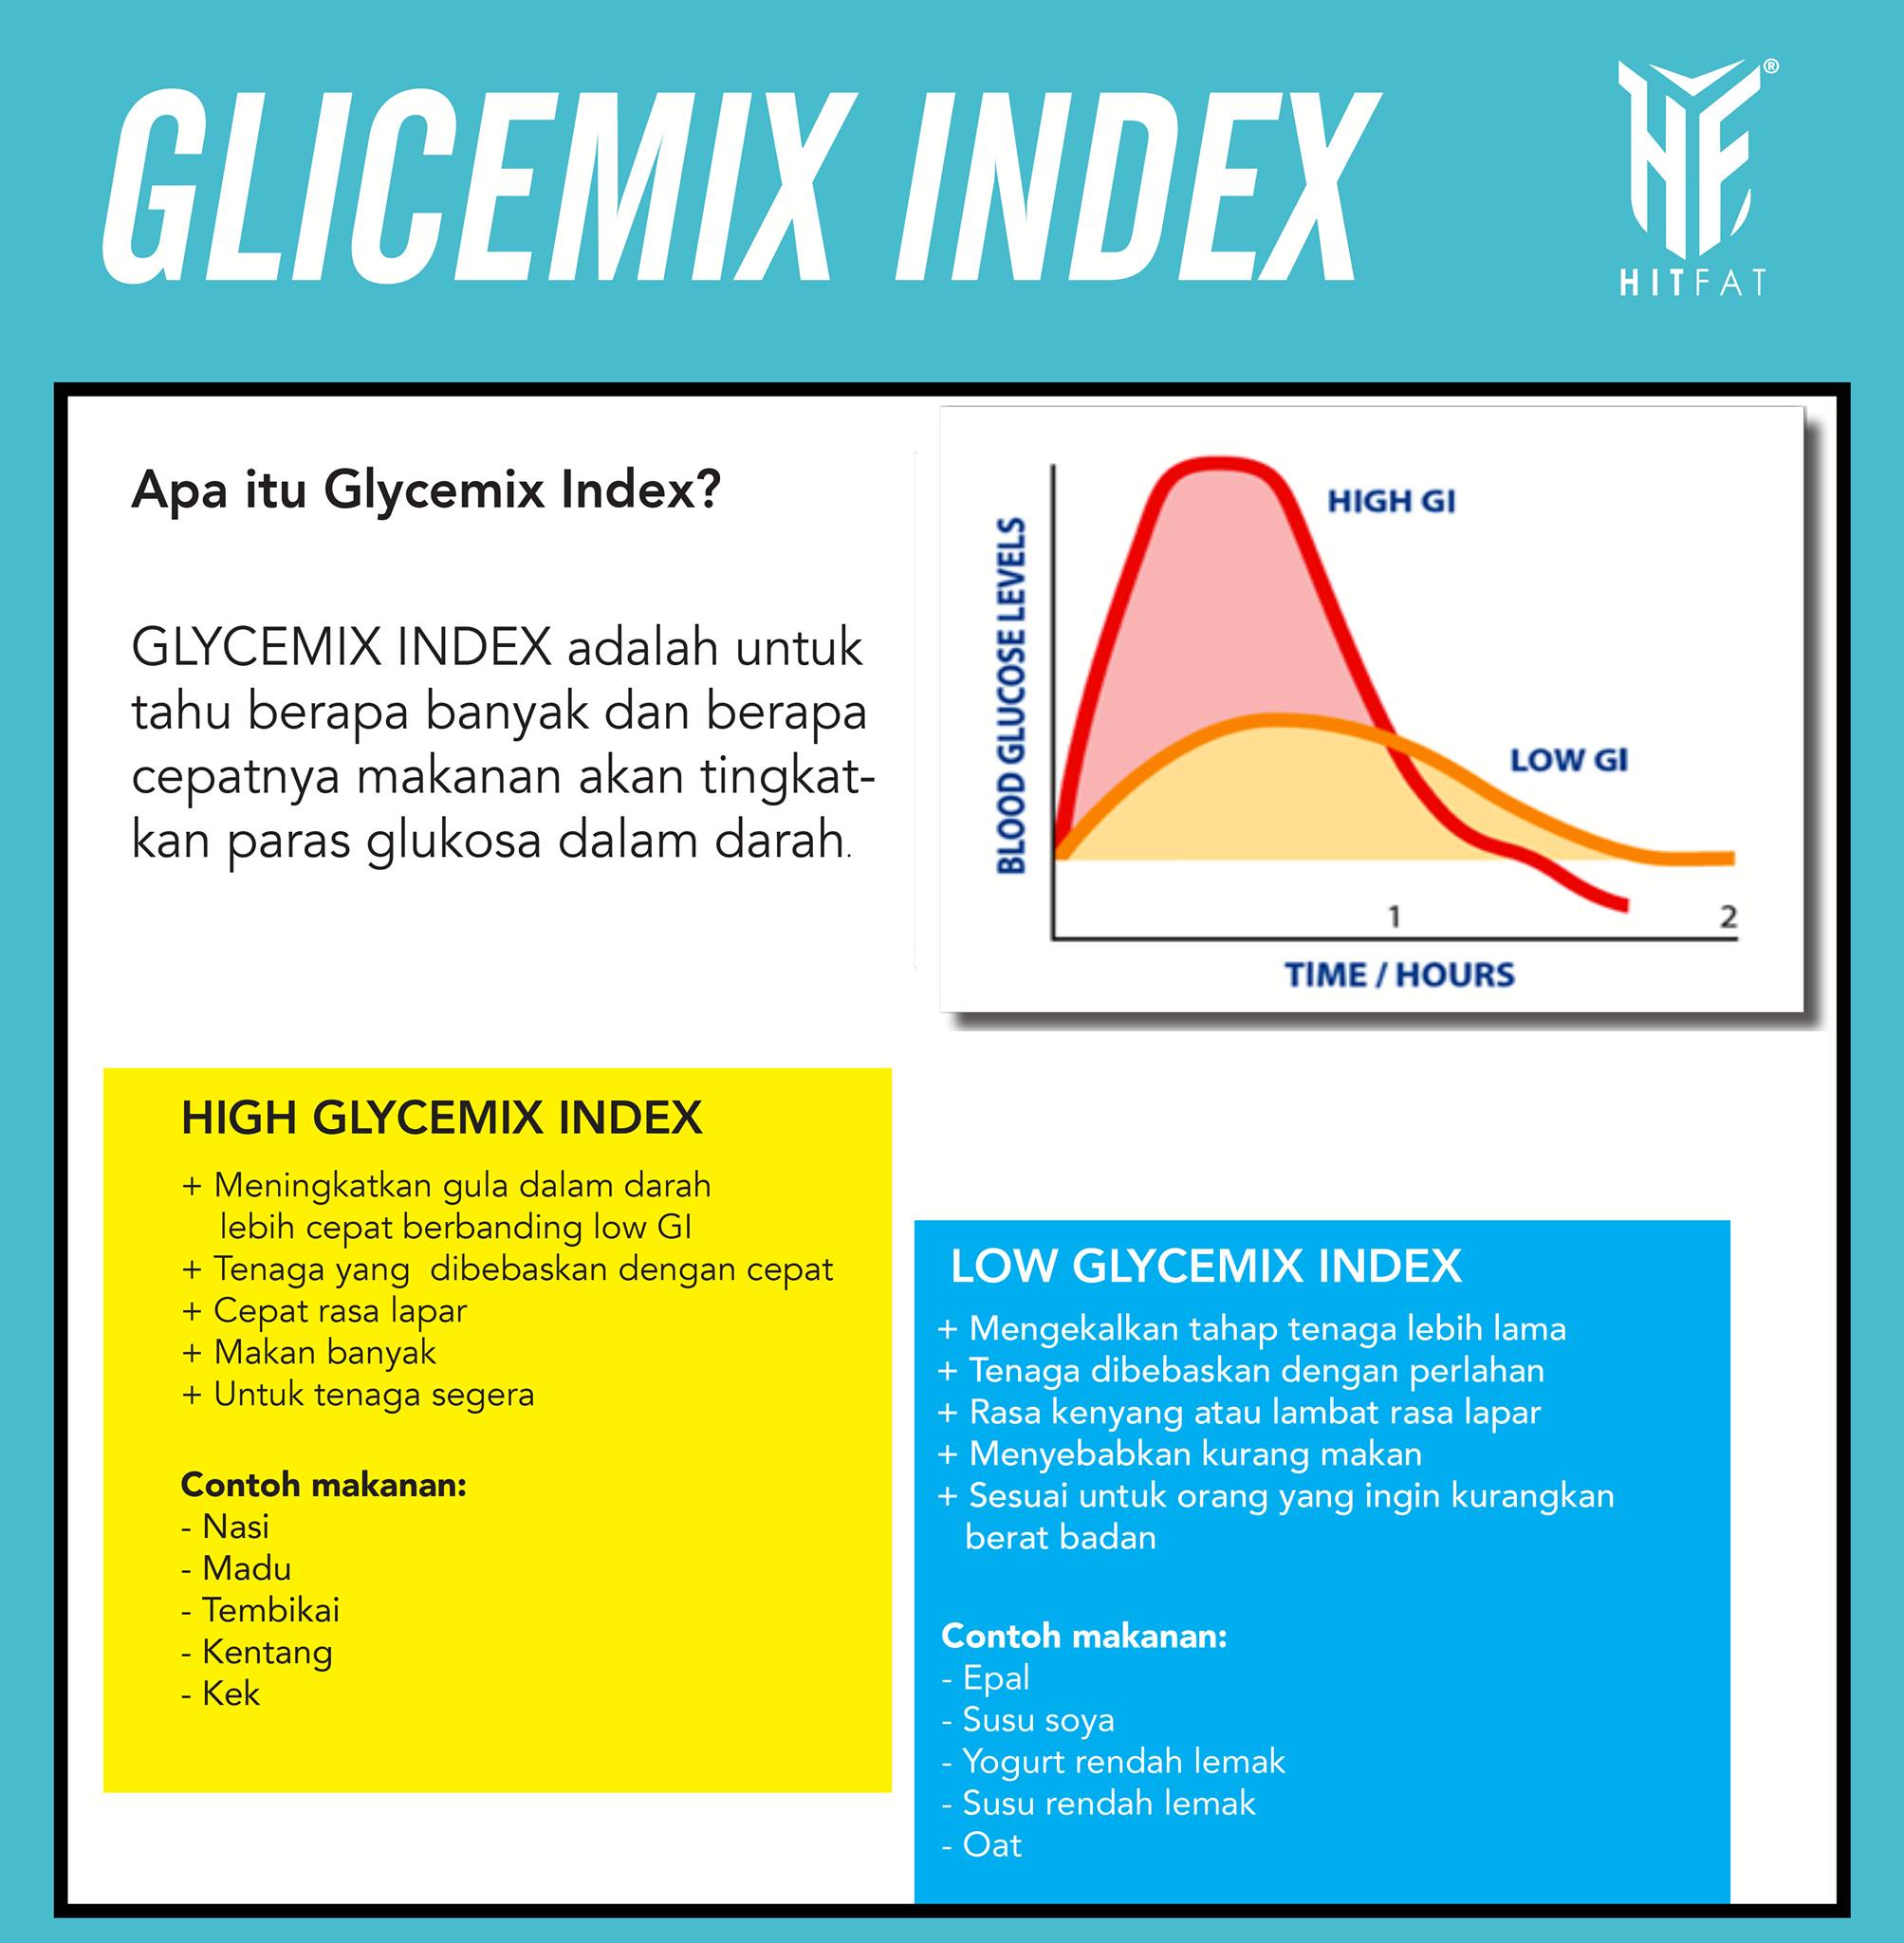 Apa itu Glicemix Index?